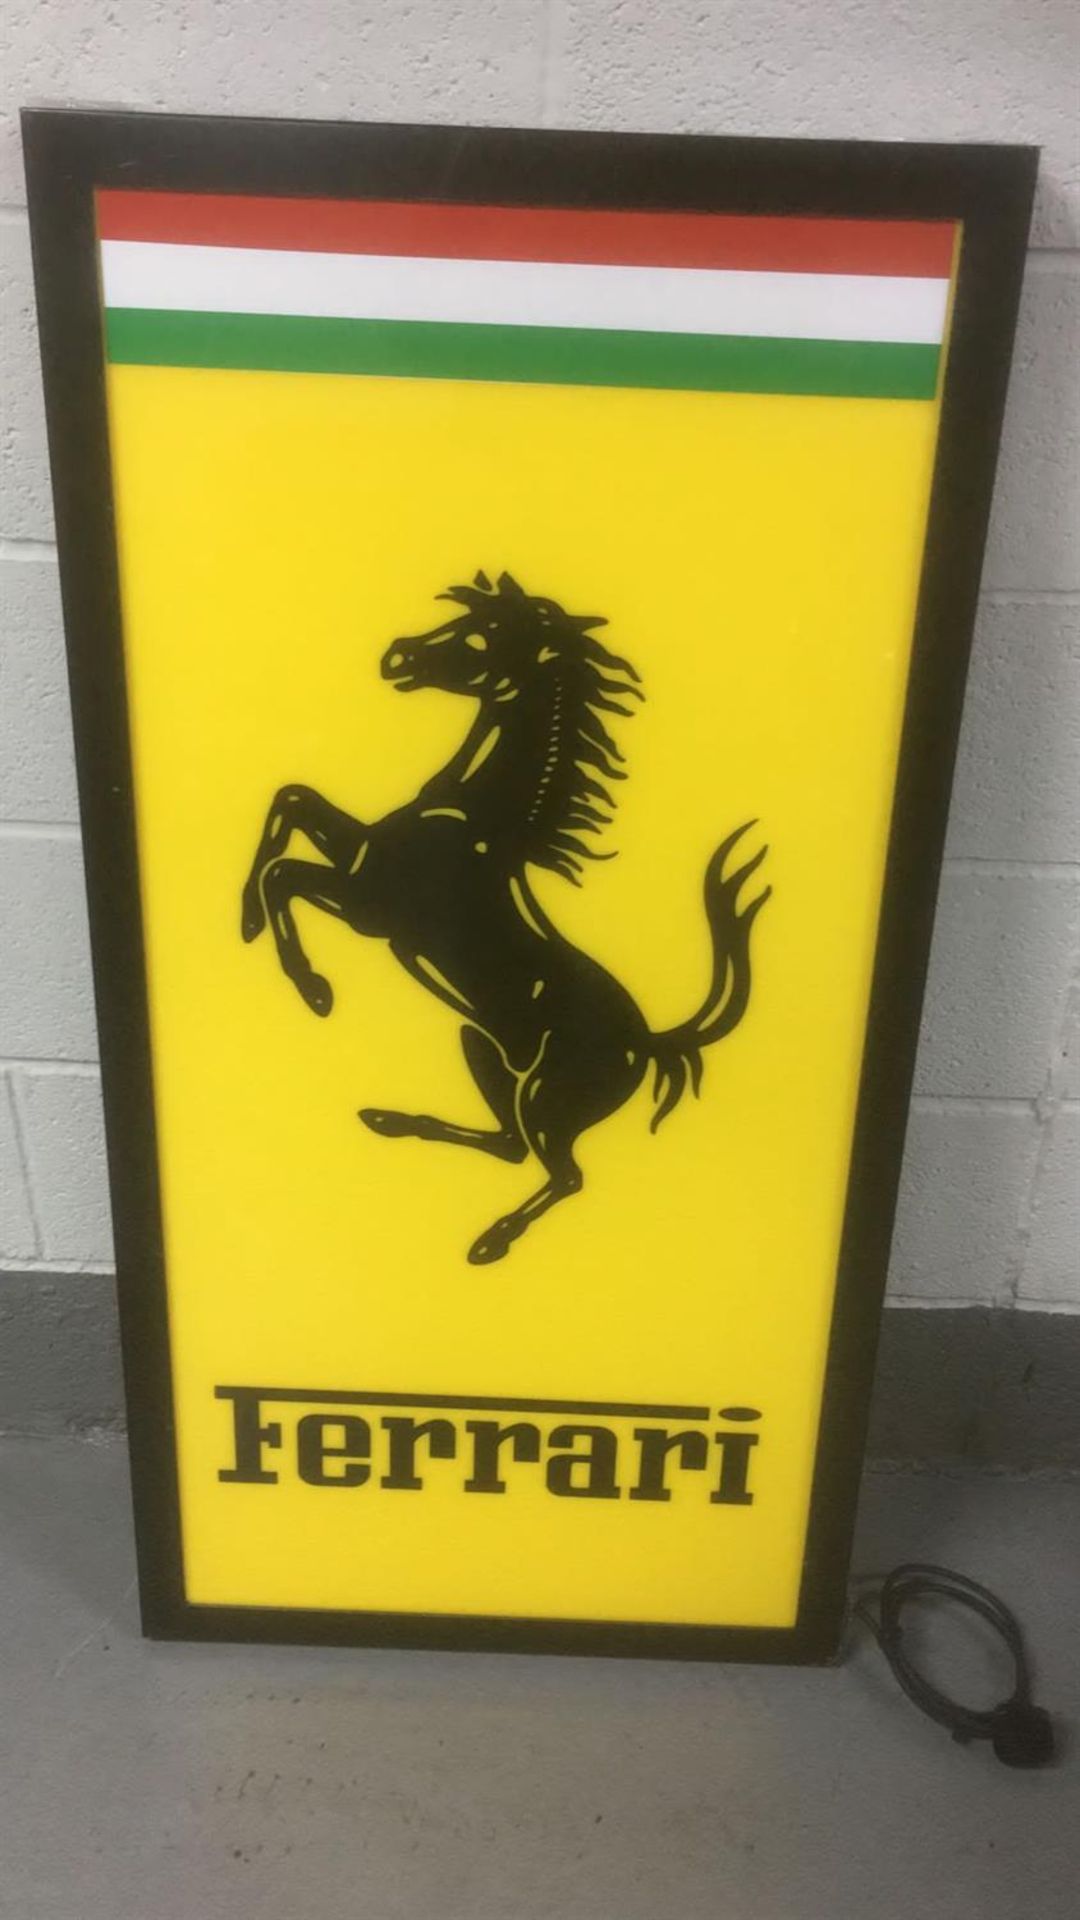 Substantial Ferrari Style LED Illuminated Sign - Image 3 of 4